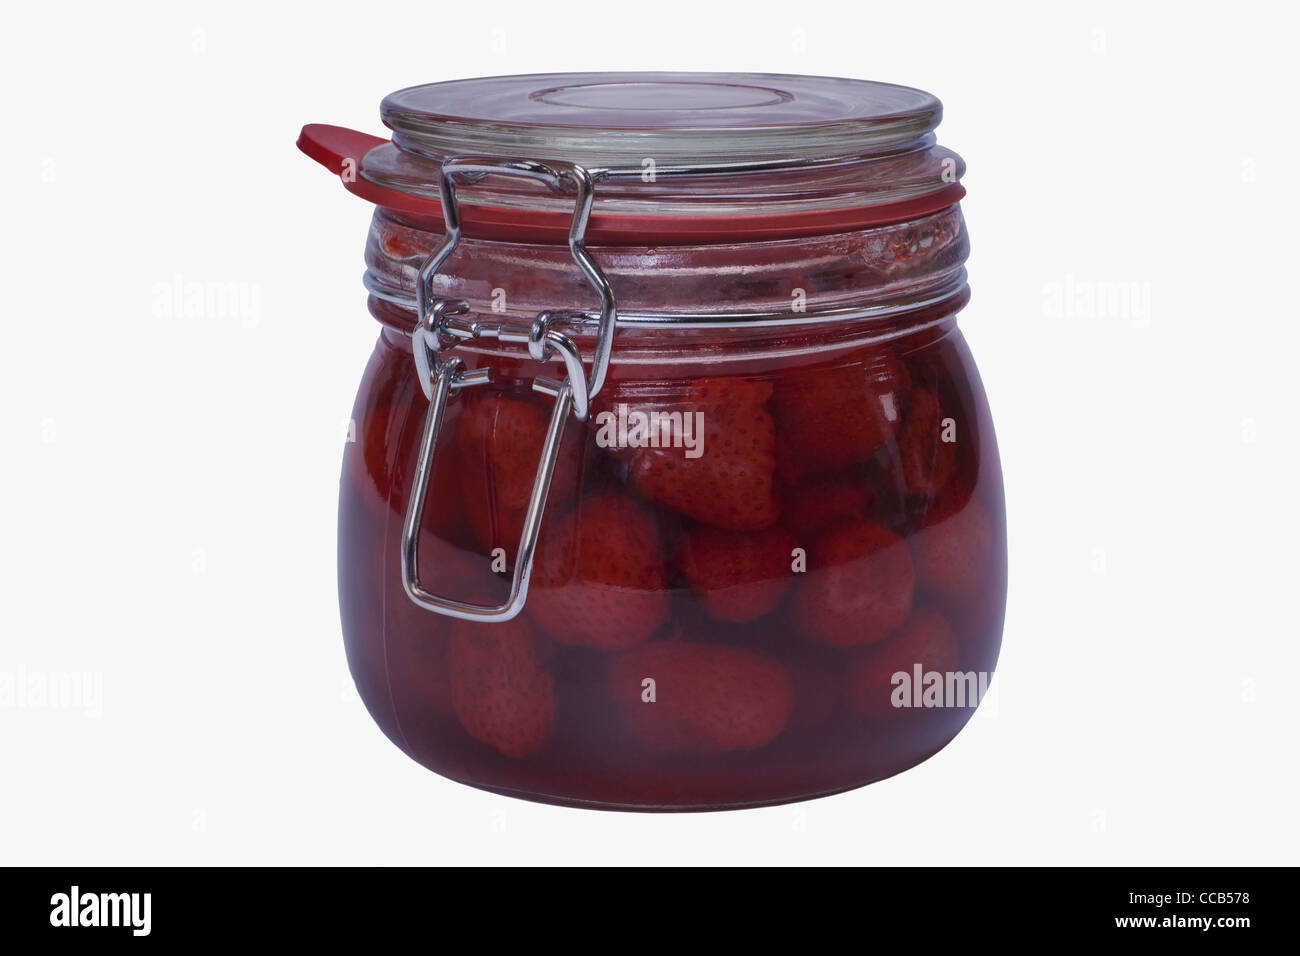 Ein Glas mit eingeweckten Erdbeeren | a jar with home canned strawberries Stock Photo